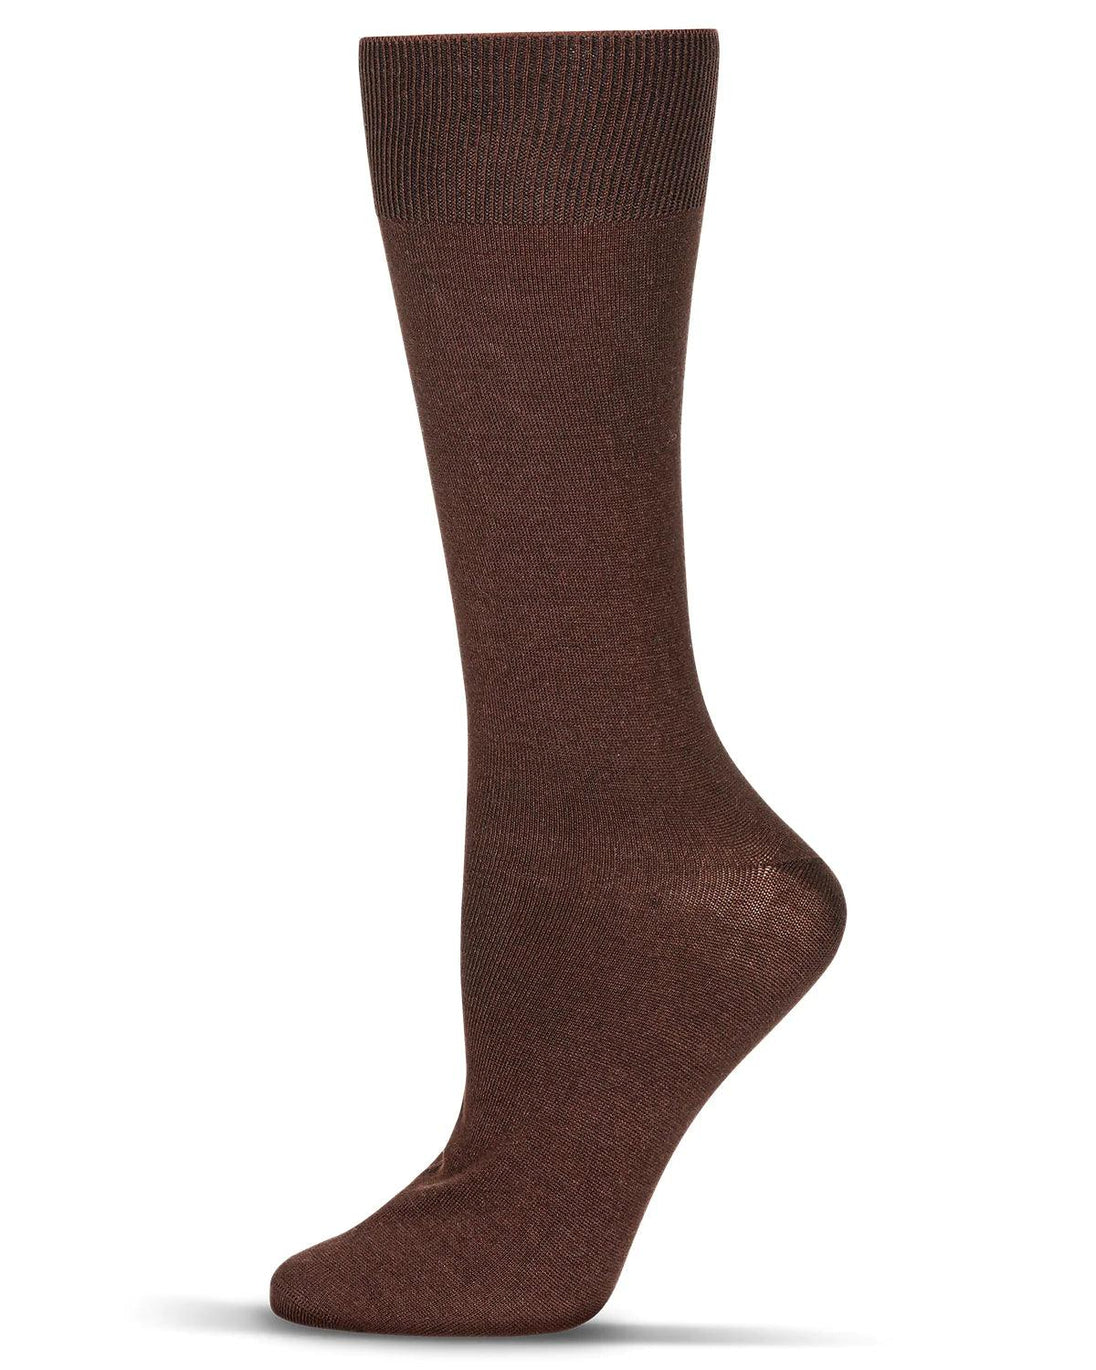 PremiumBrandGoods Men's Dress Socks 10-13 Size